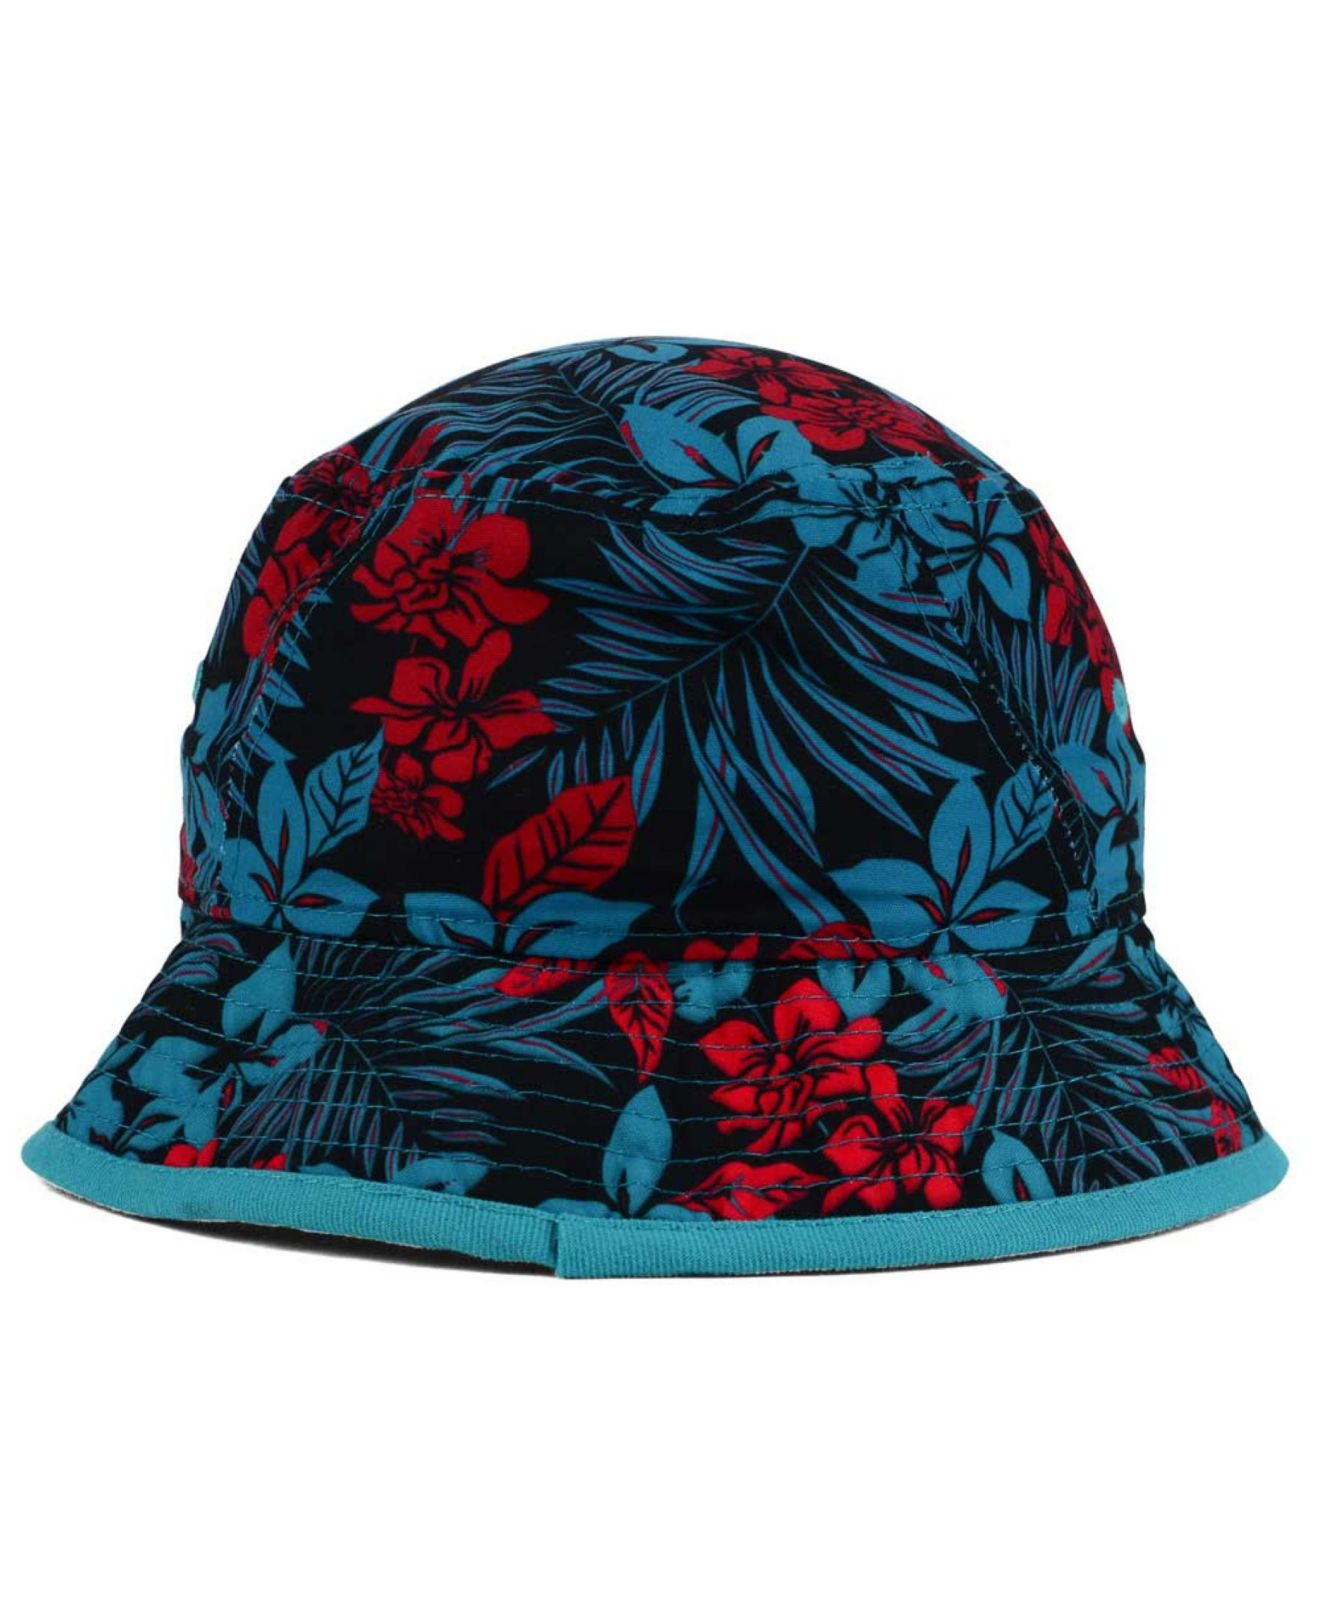 KTZ Detroit Pistons Wowie Bucket Hat in Teal (Blue) for Men - Lyst